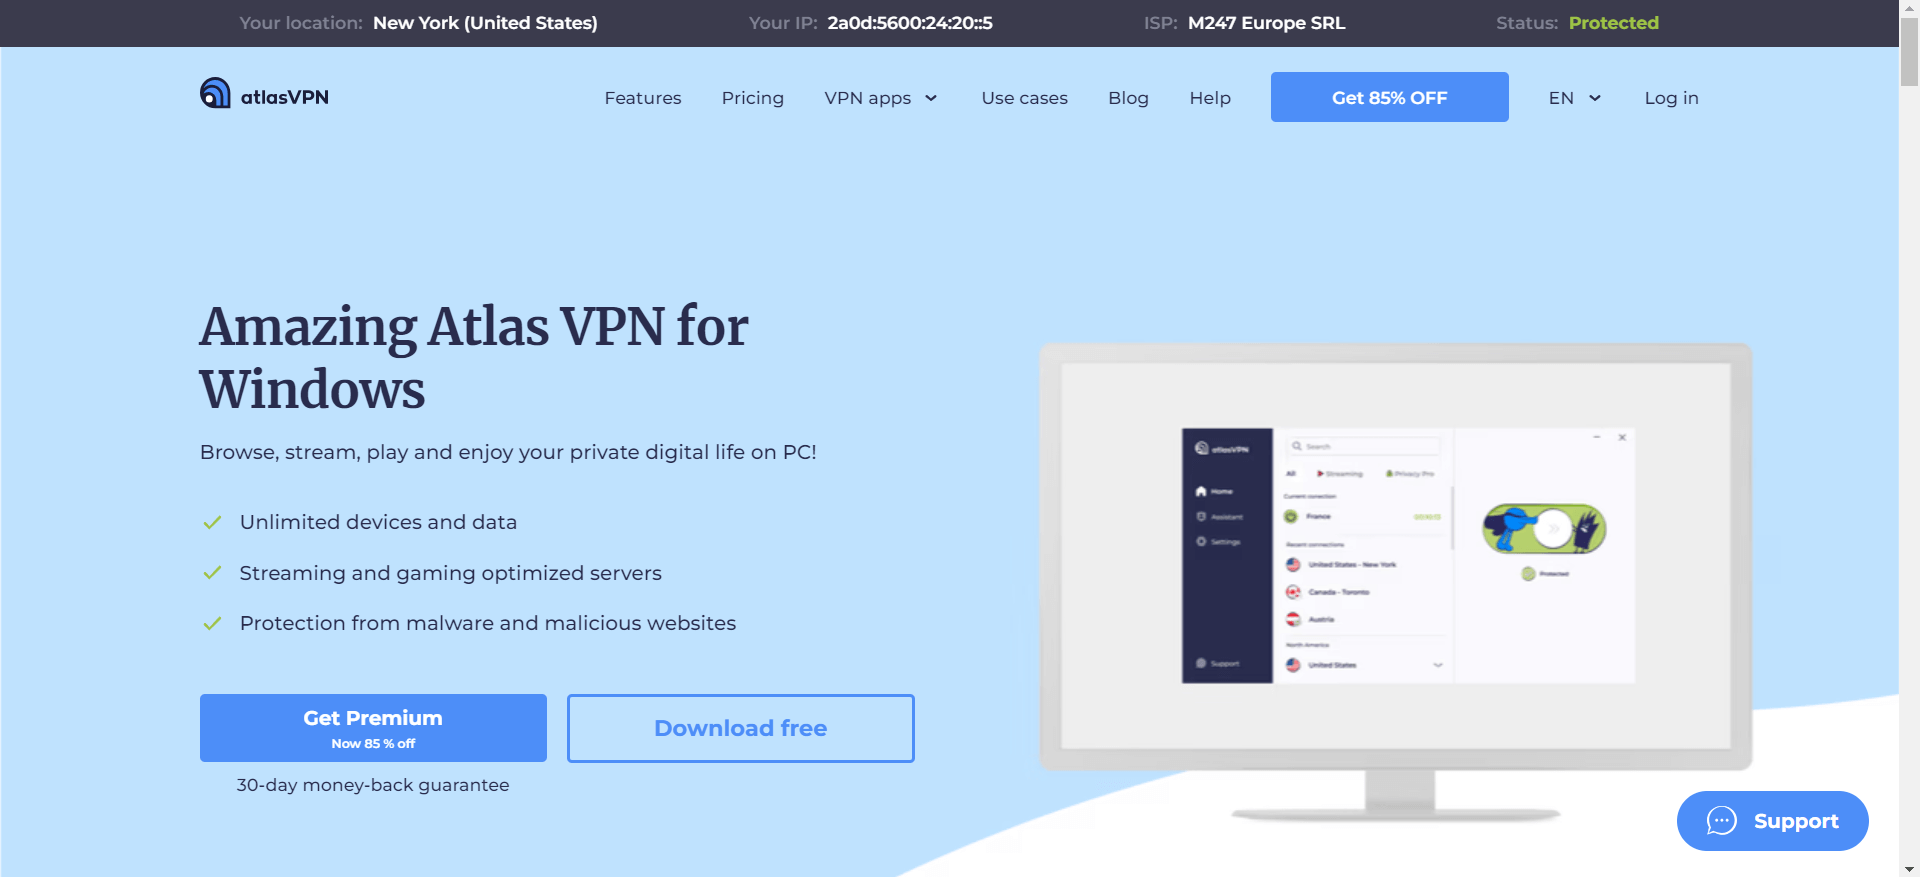 Atlas VPN Home Page